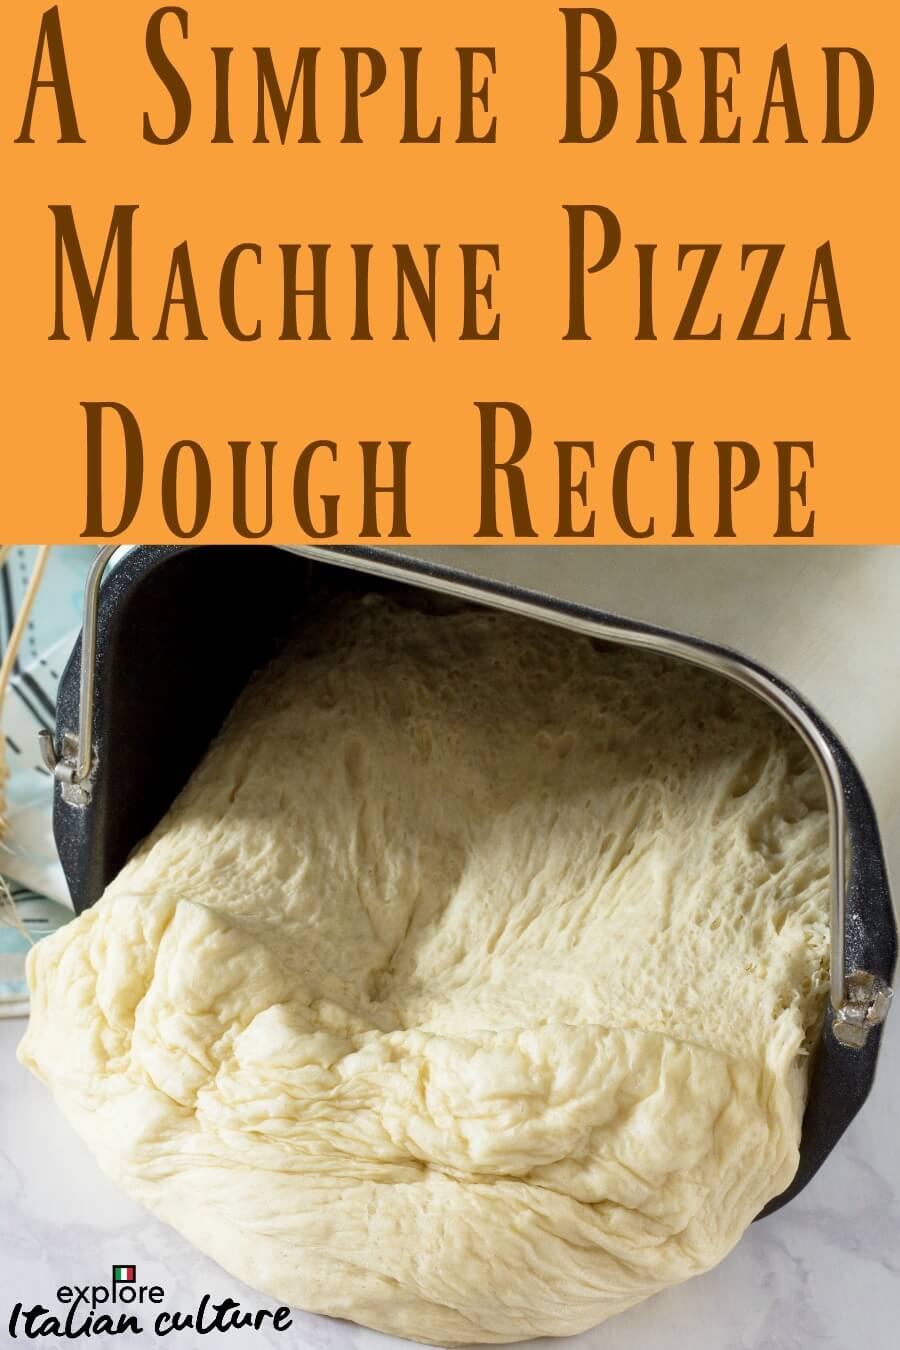 Italian pizza dough bread machine